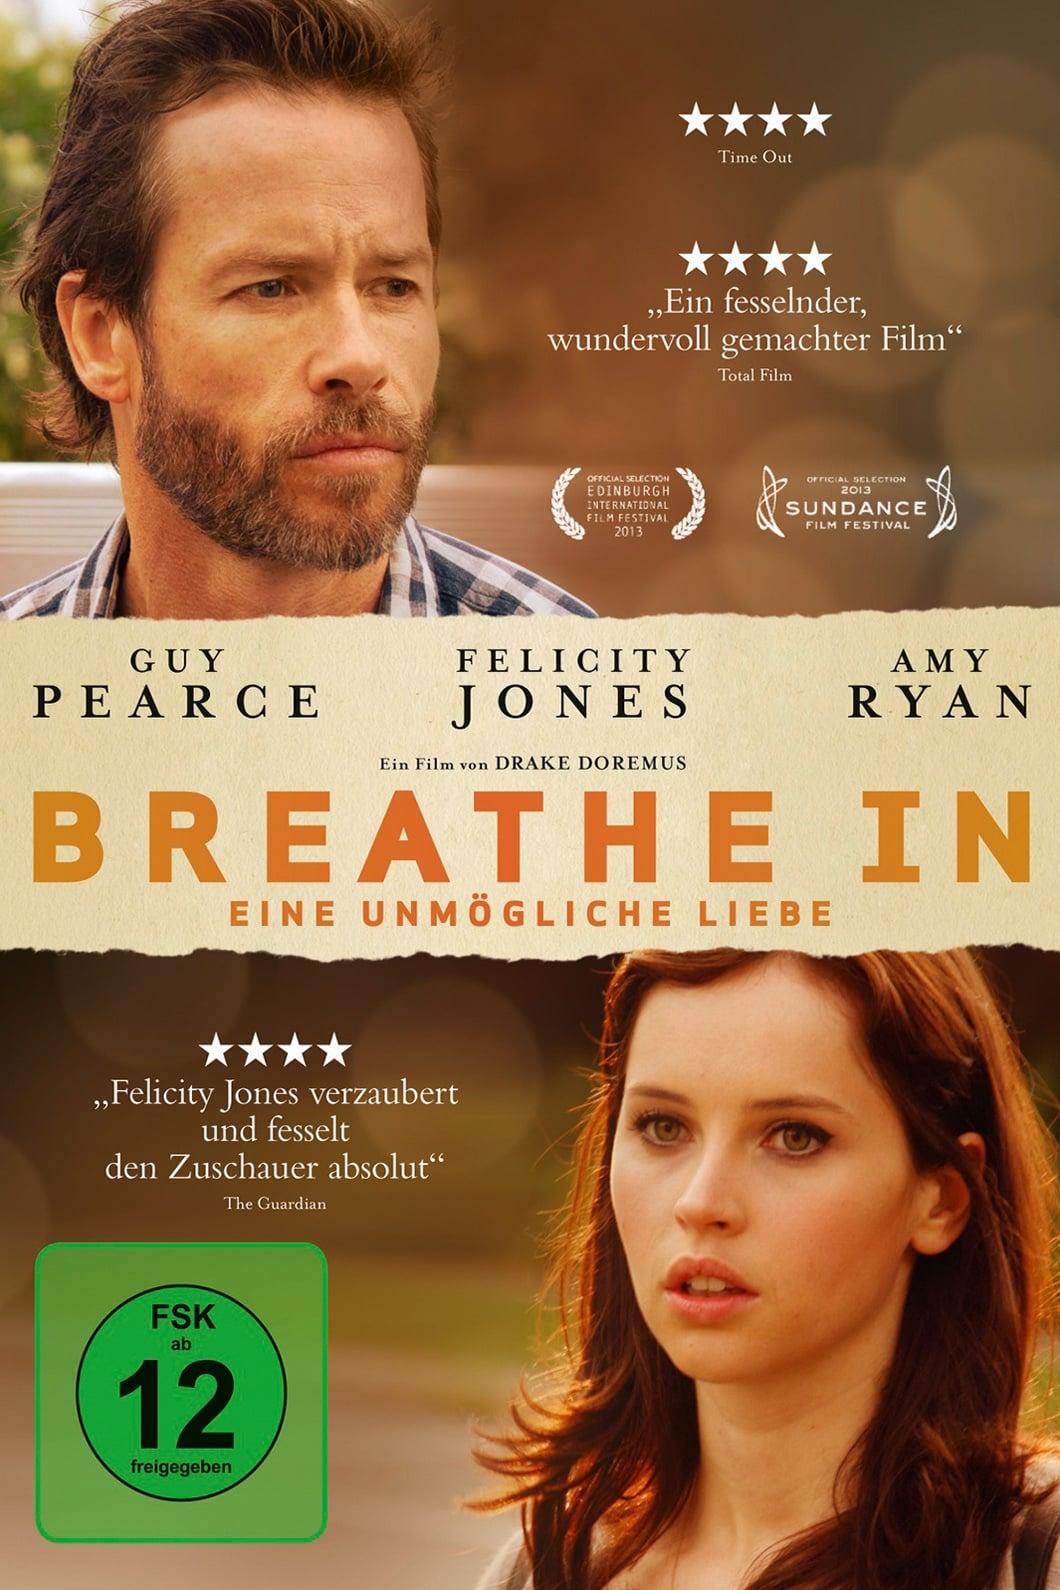 Breathe In - Eine unmögliche Liebe poster